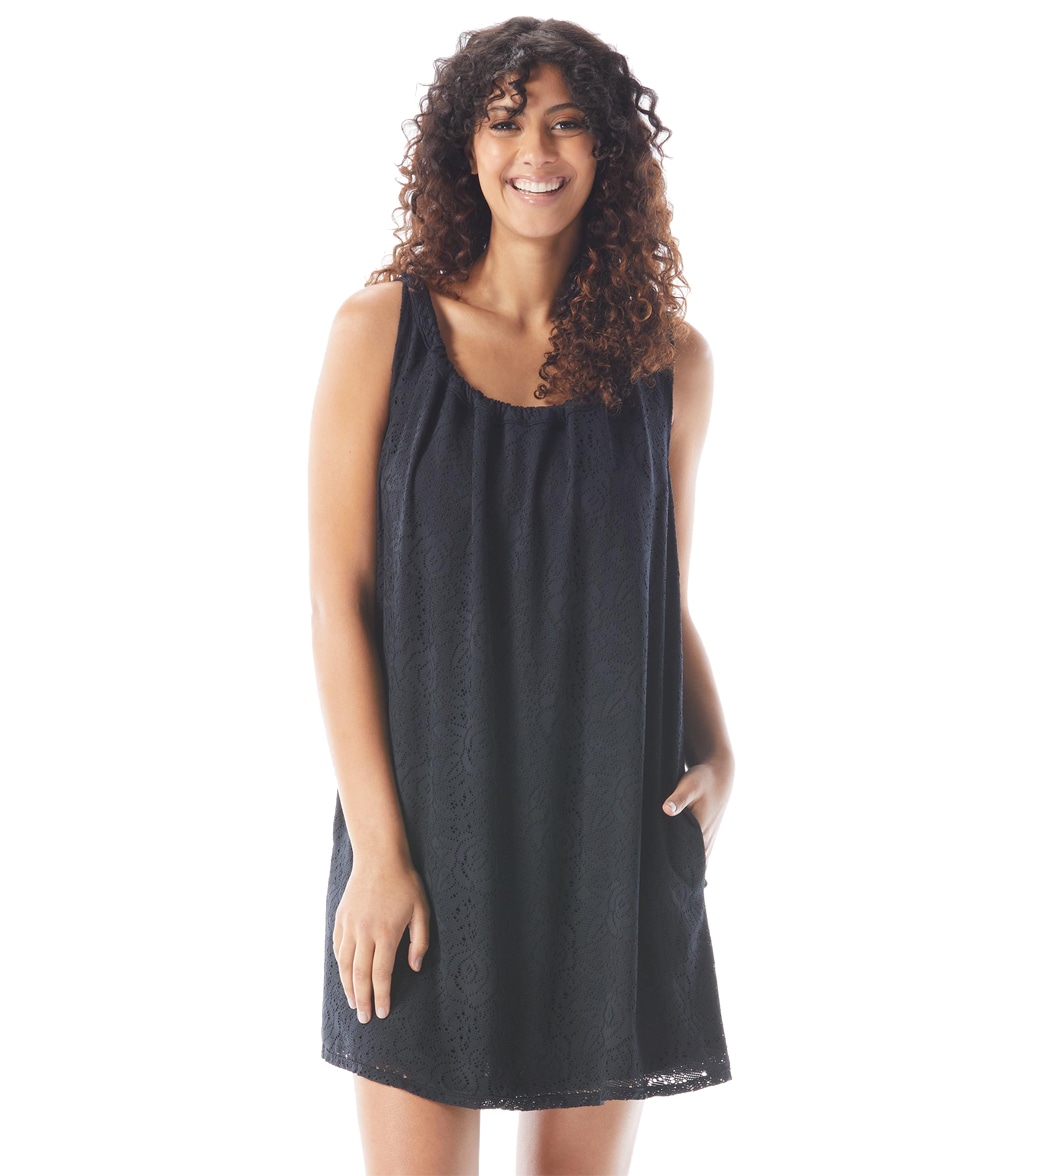 Beach House Crochet Soleil Colette Lace Drawcord Tank Dress - Black Large - Swimoutlet.com